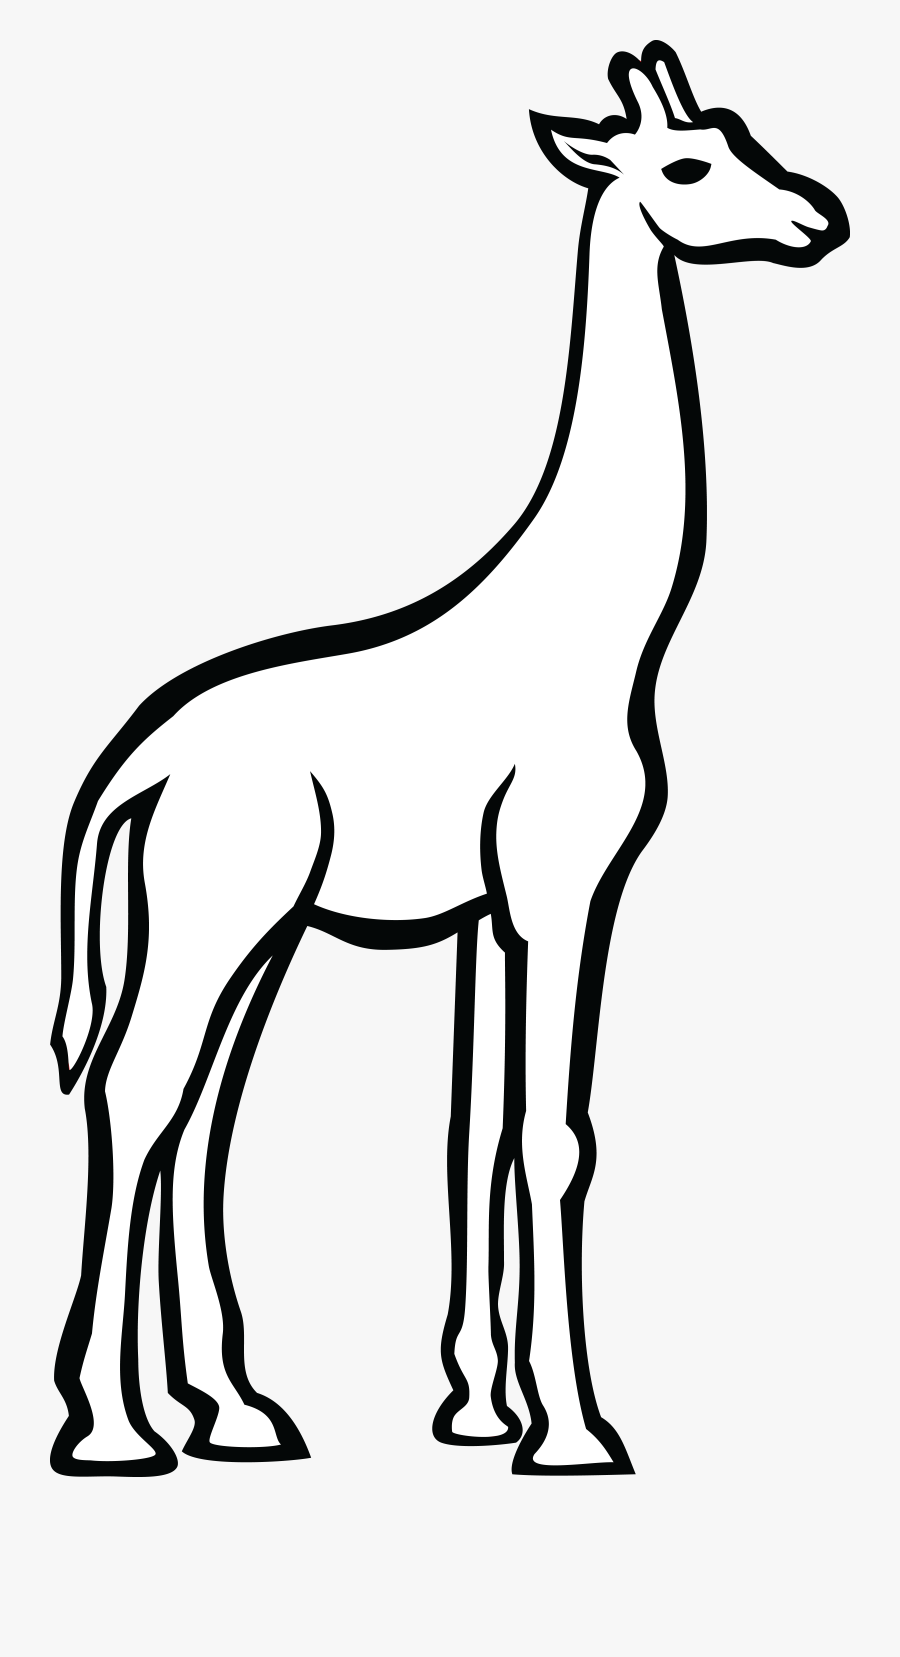 Free Clipart Of A Giraffe - Giraffe Line Art, Transparent Clipart